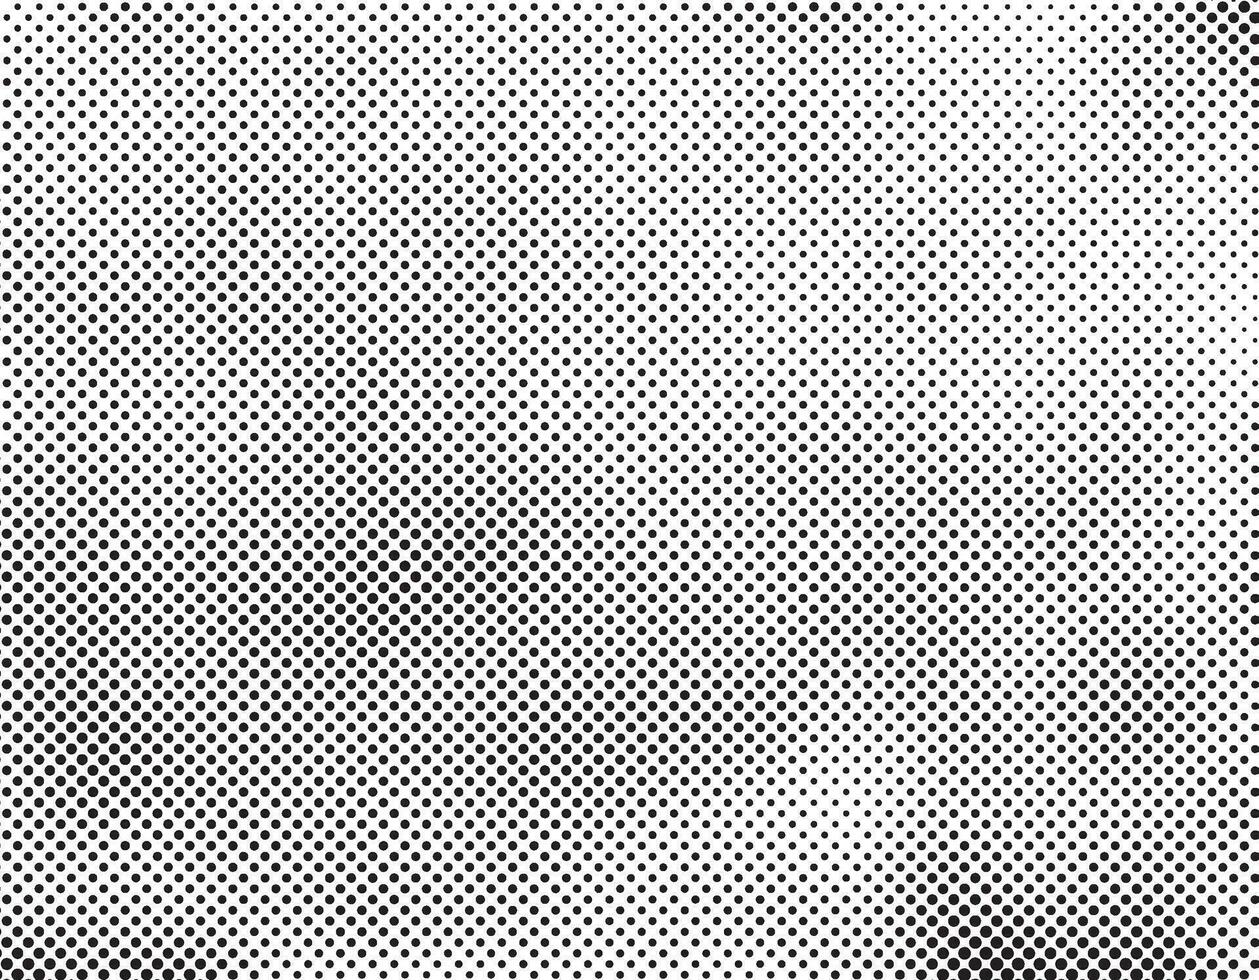 abstrakt halvton punkt bakgrund i vit och svart toner i grunge stil, svartvit bakgrund för företag kort, affisch, interiör design, klistermärke, hemsida, reklam vektor